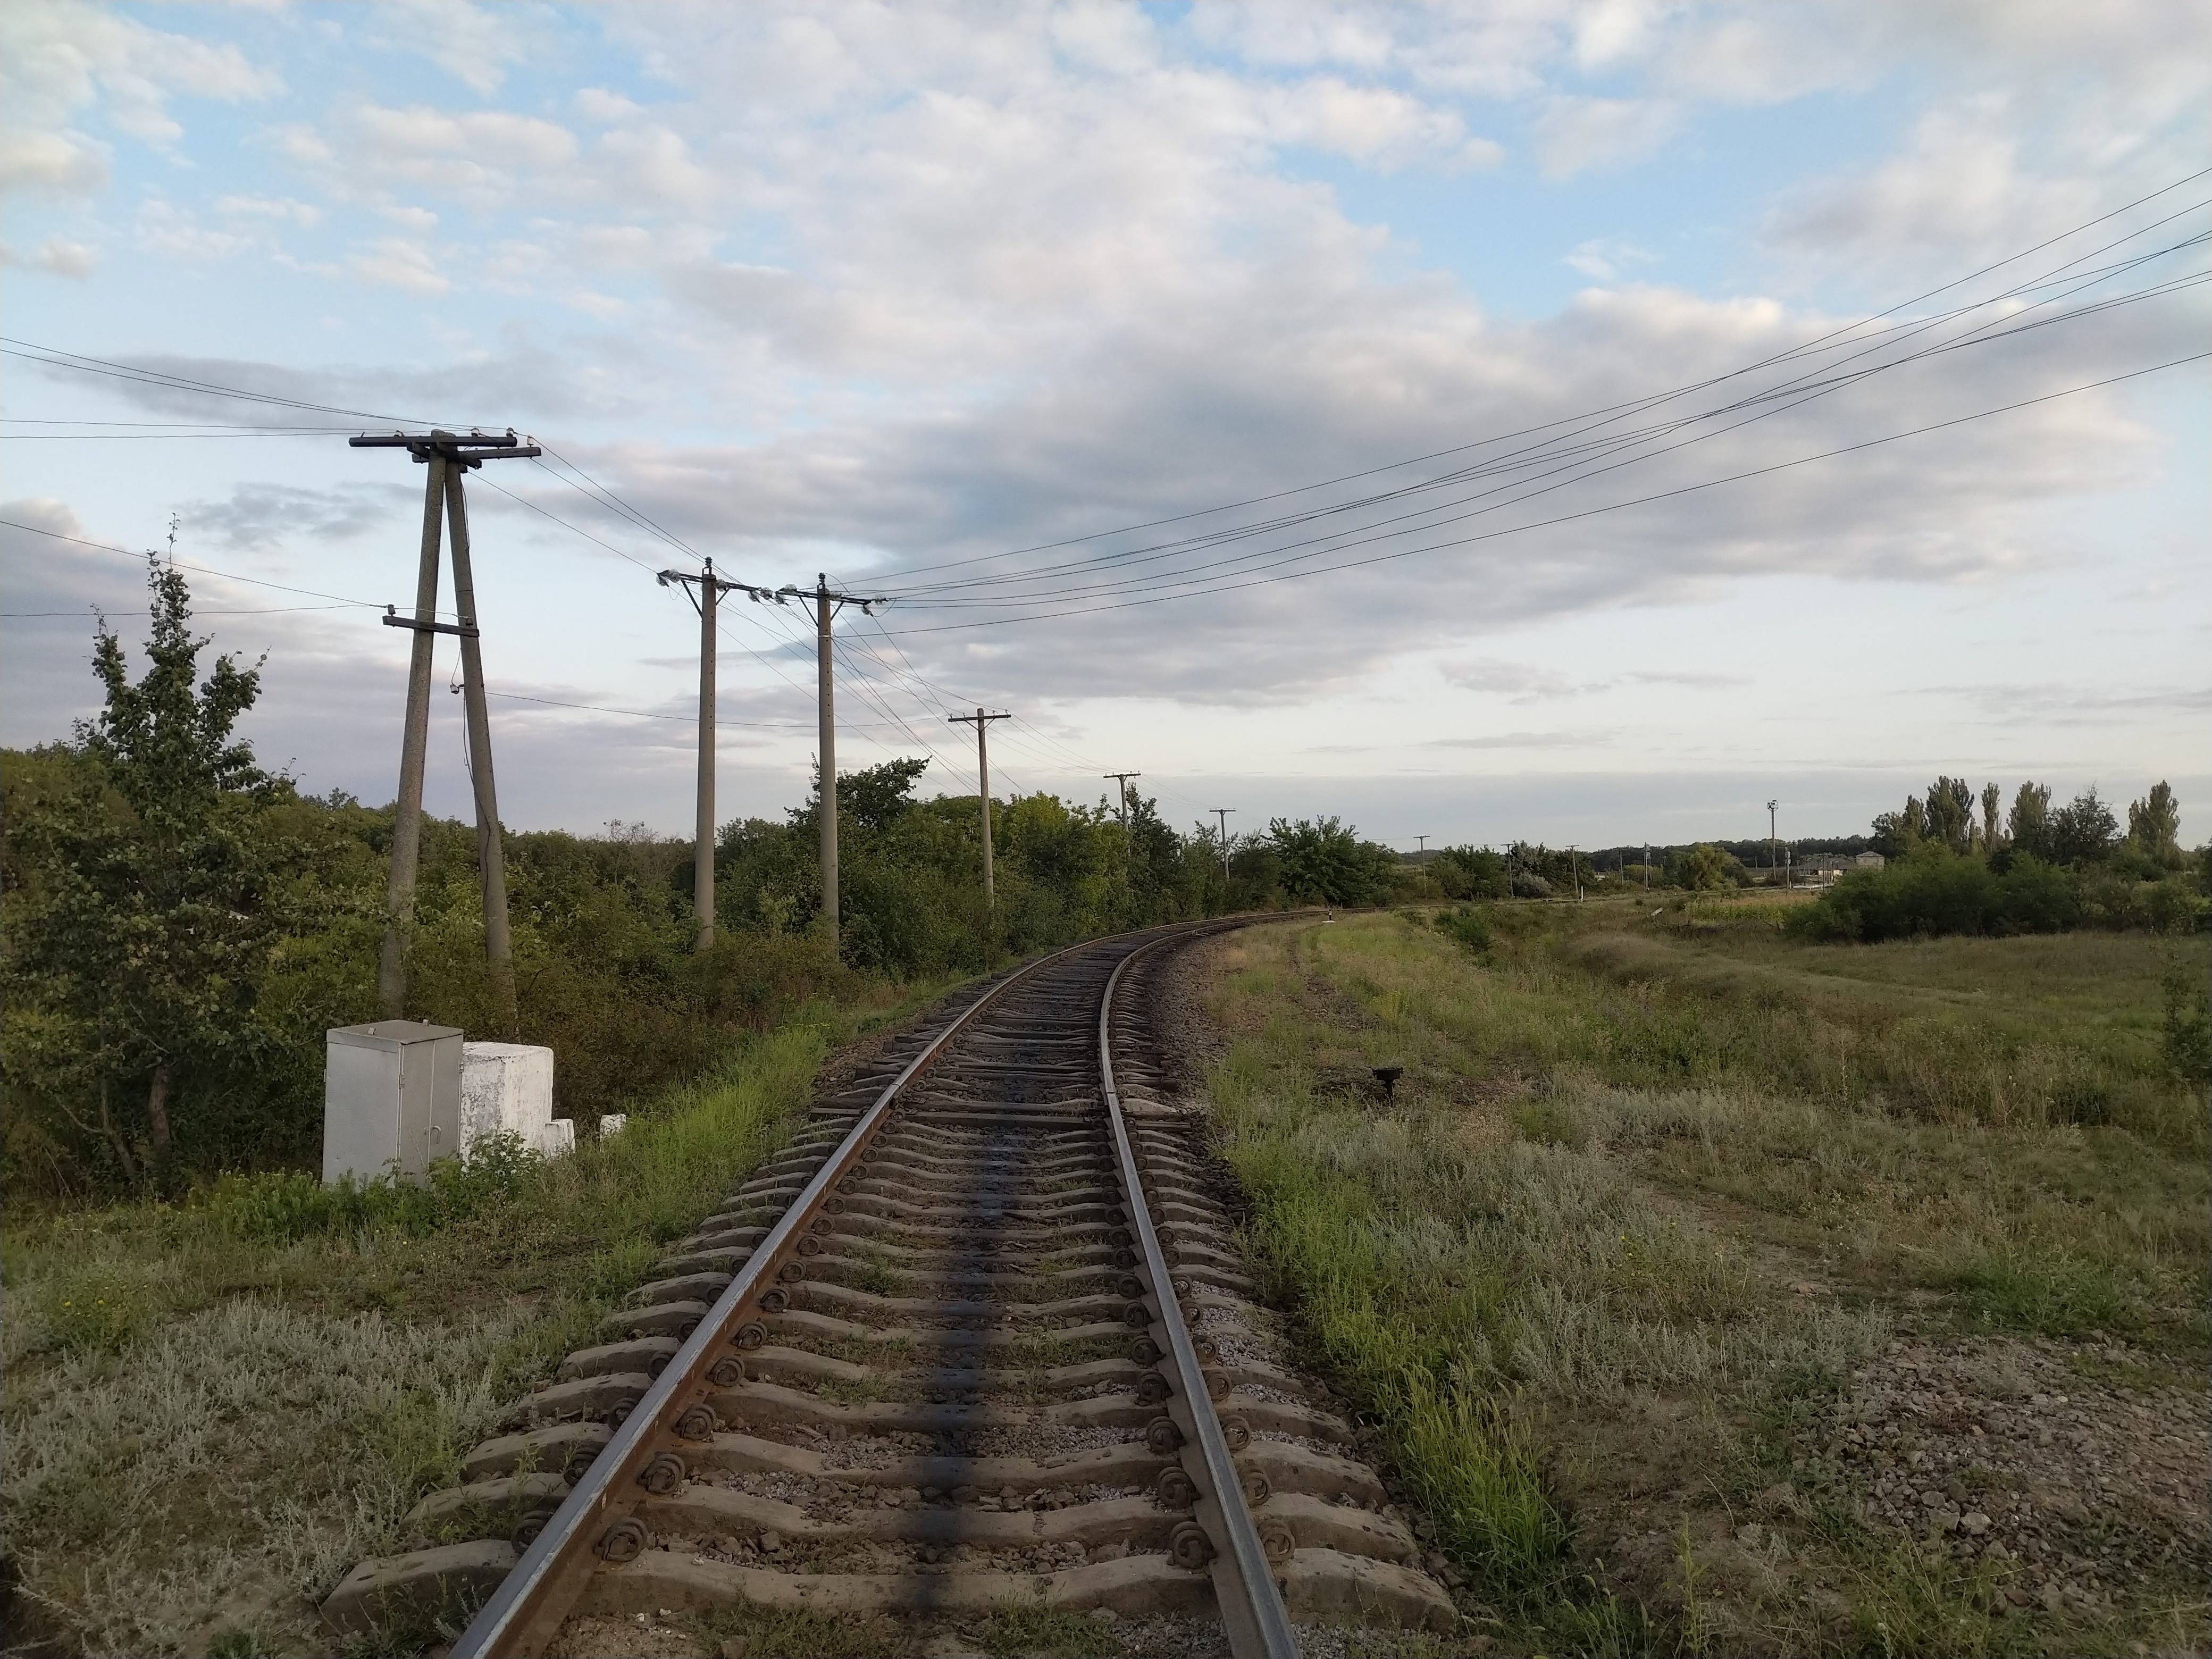 MD, District Cimislia, Satul Zloti (Statie de Cale Ferata), Calea ferată în satul Zloț